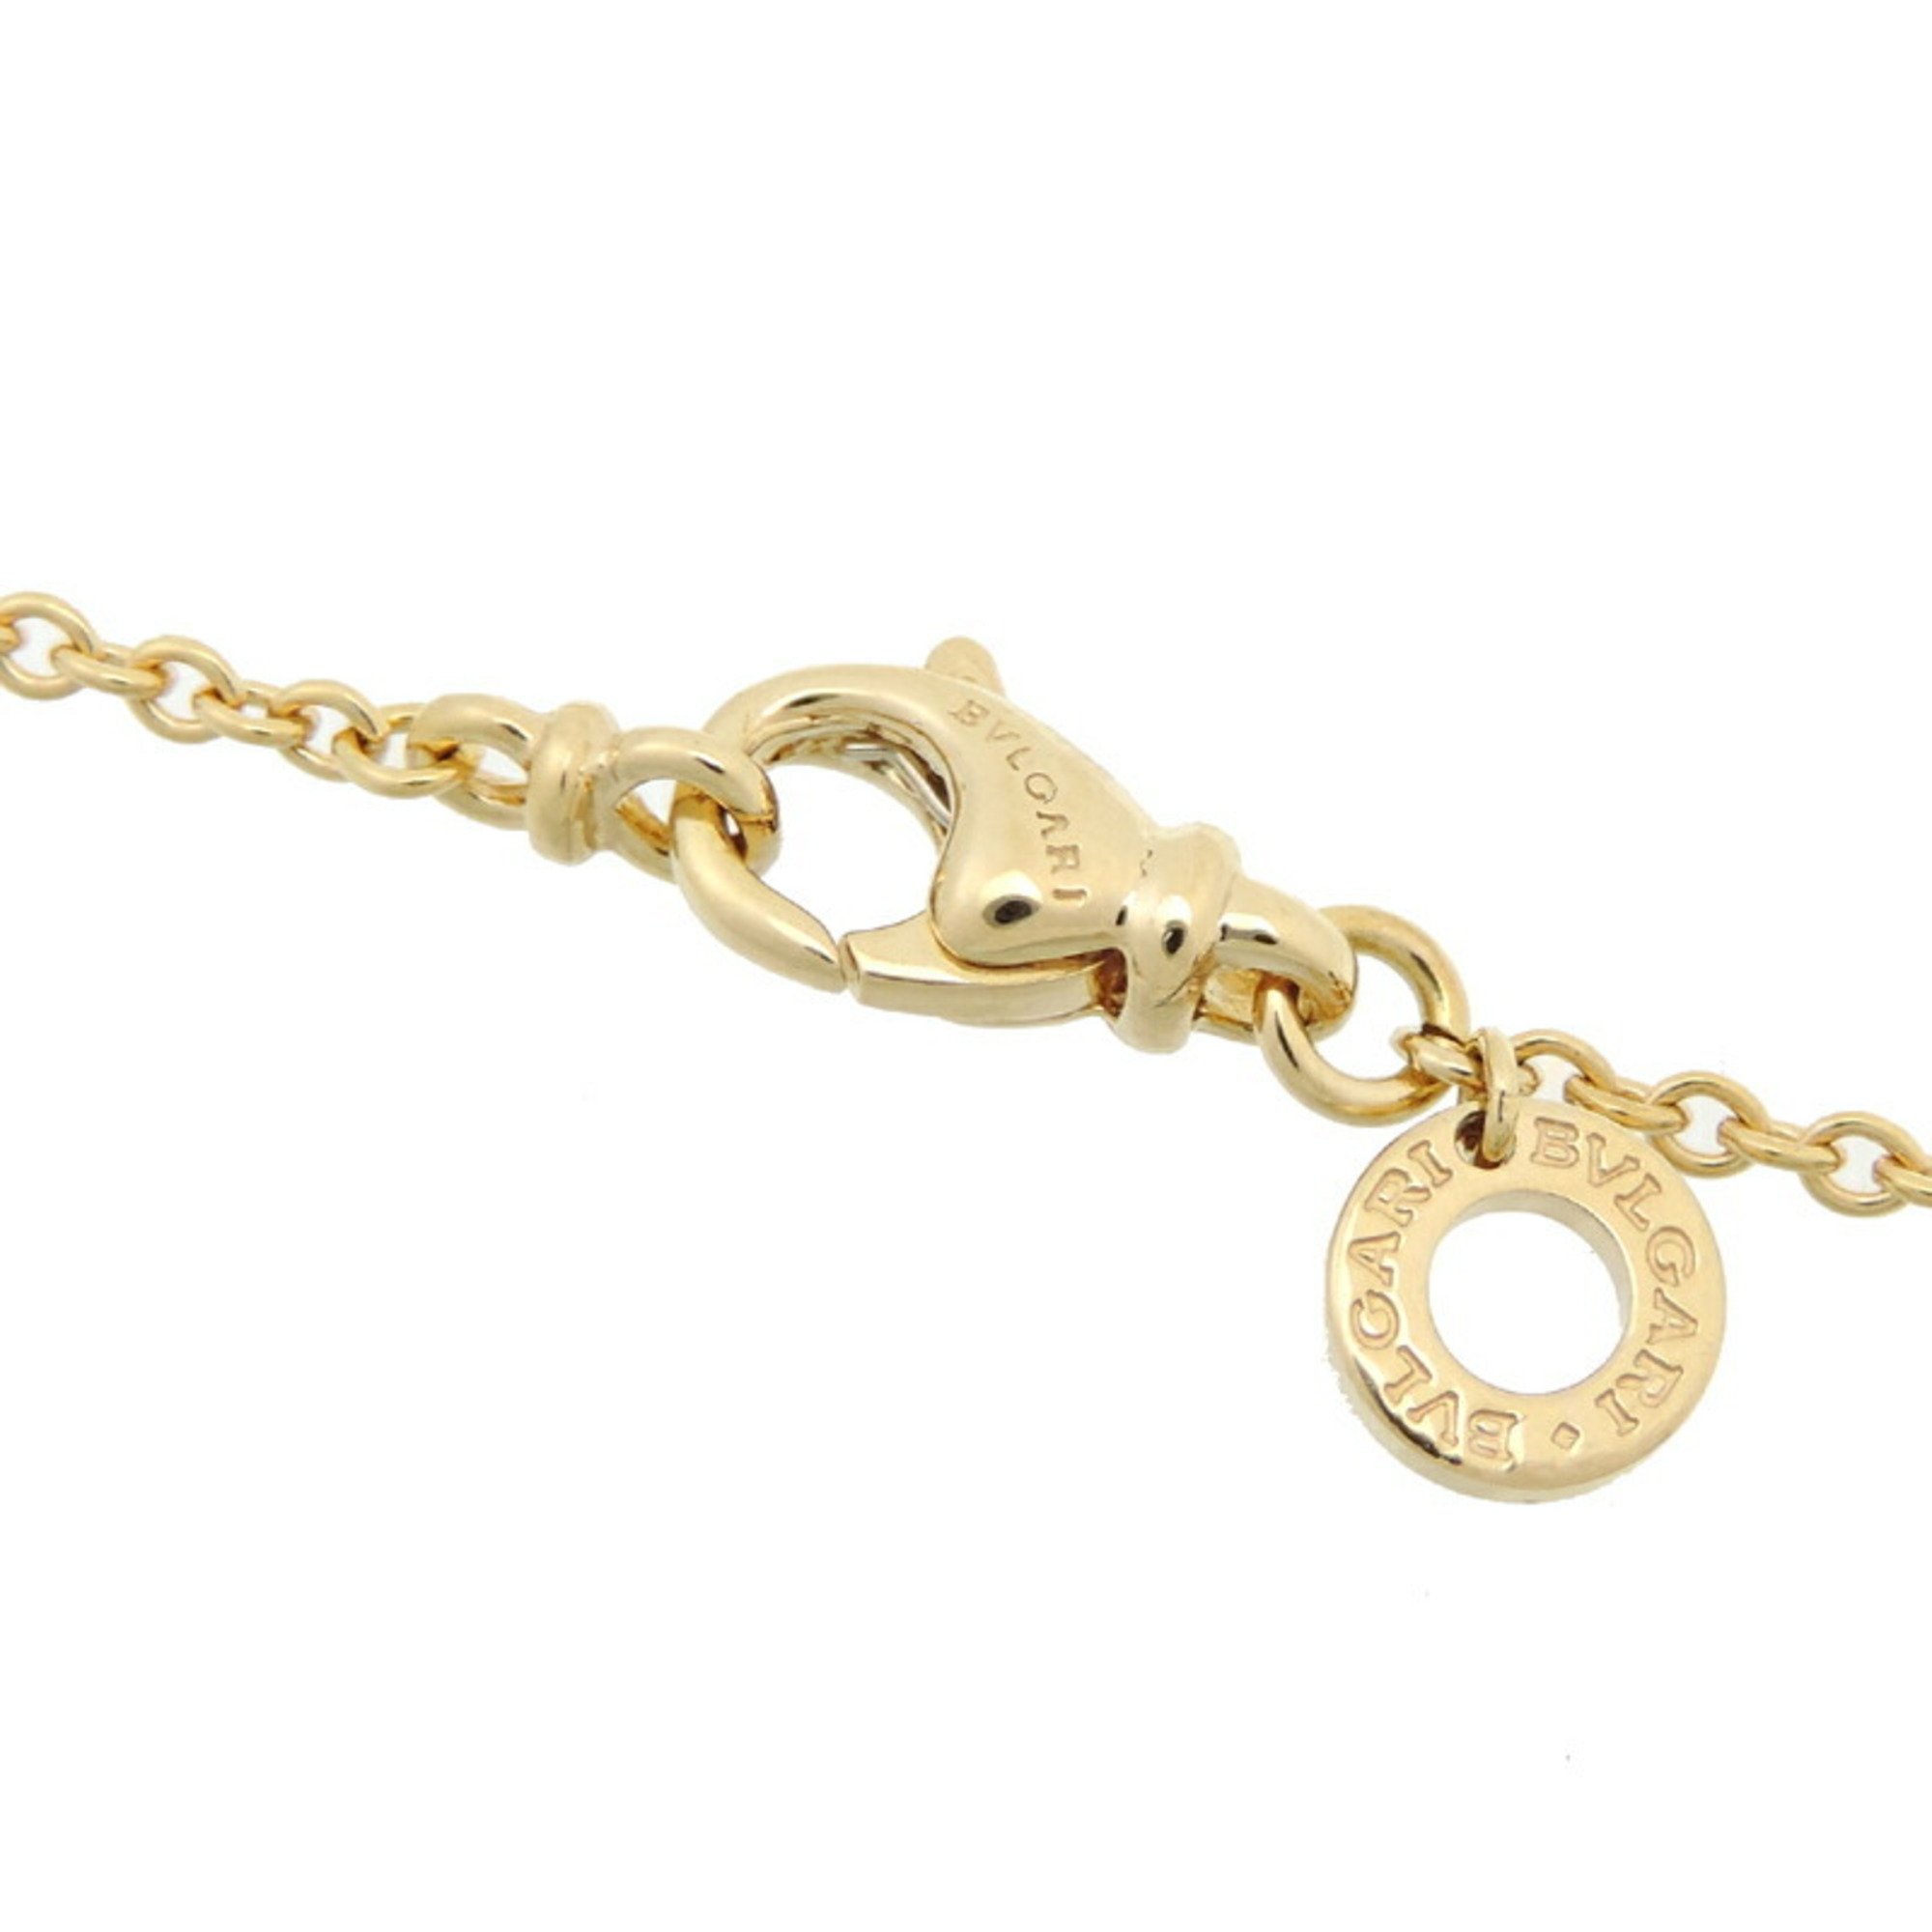 Bvlgari Bulgari B.zero1 Diamond Necklace for Men and Women in 750 Yellow Gold